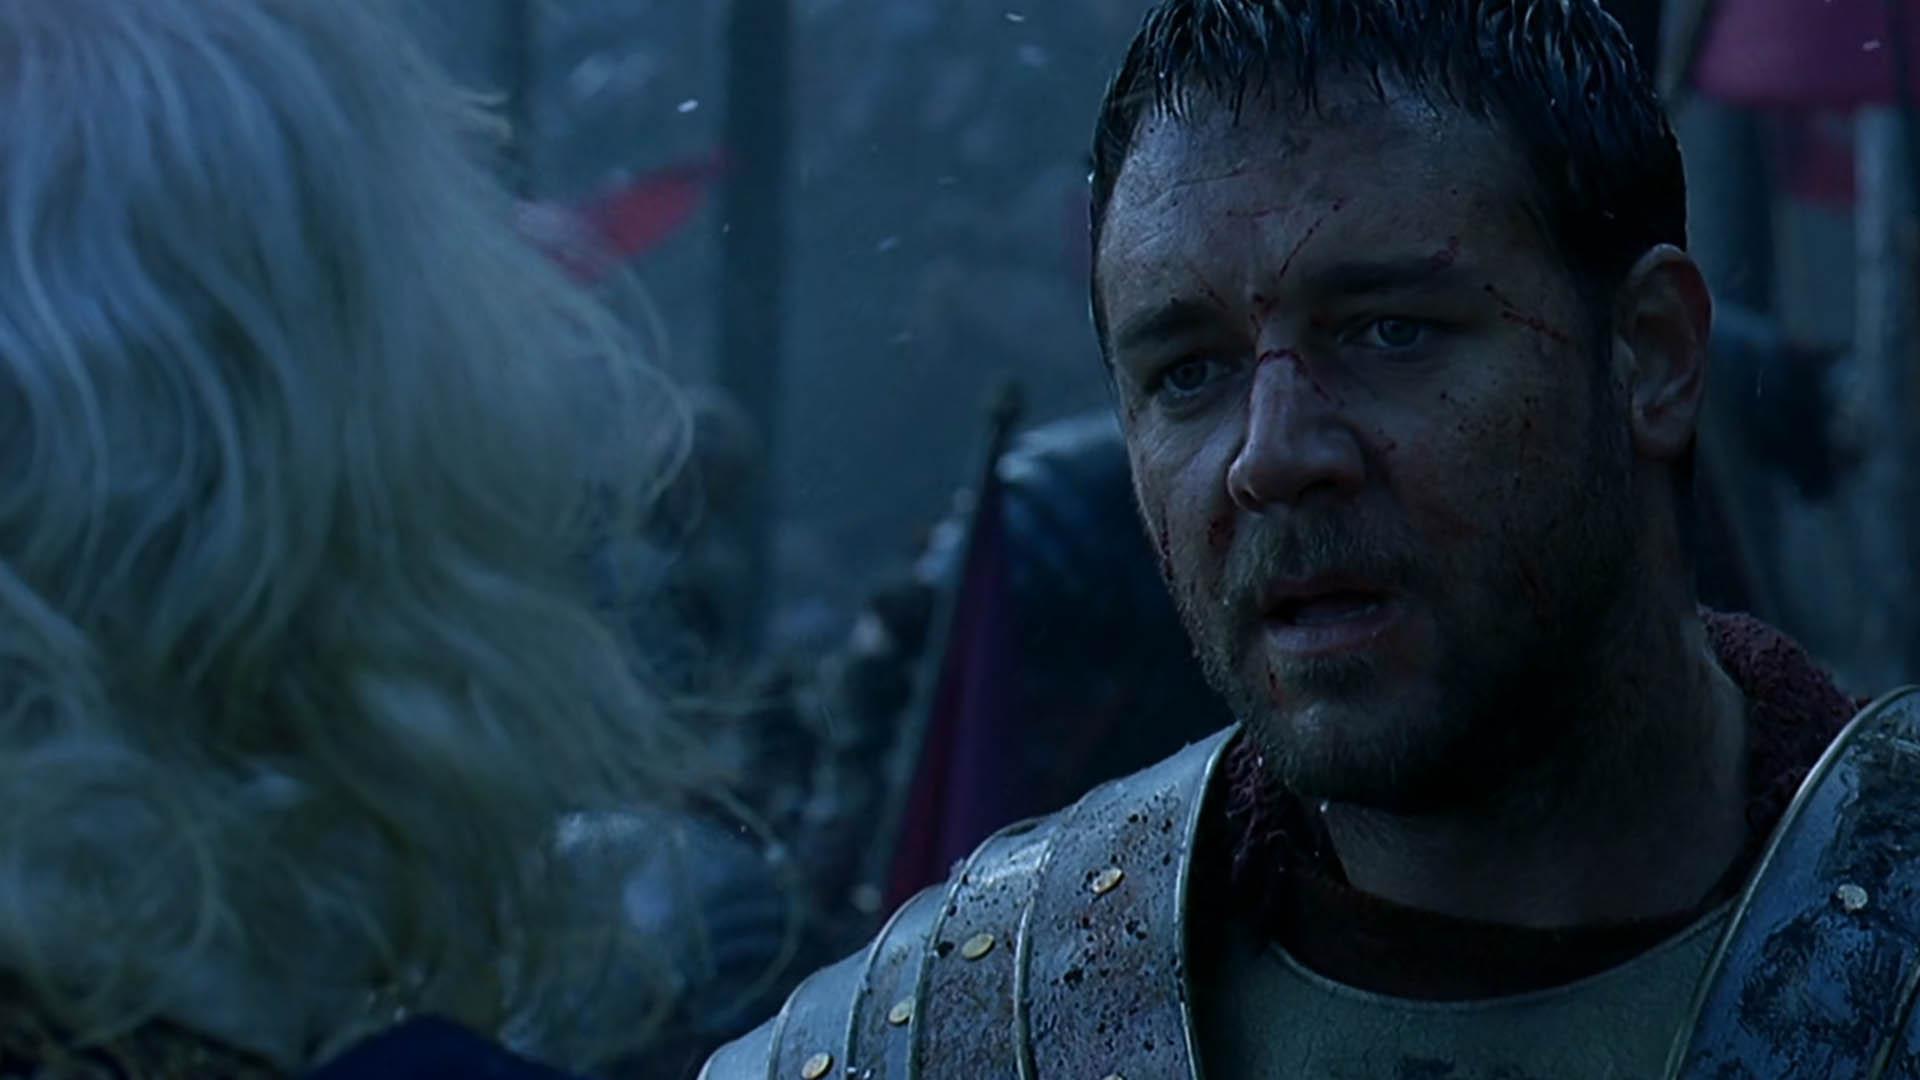 زخم های صورت شخصیت ماکسیموس با بازی راسل کرو در فیلم gladiator